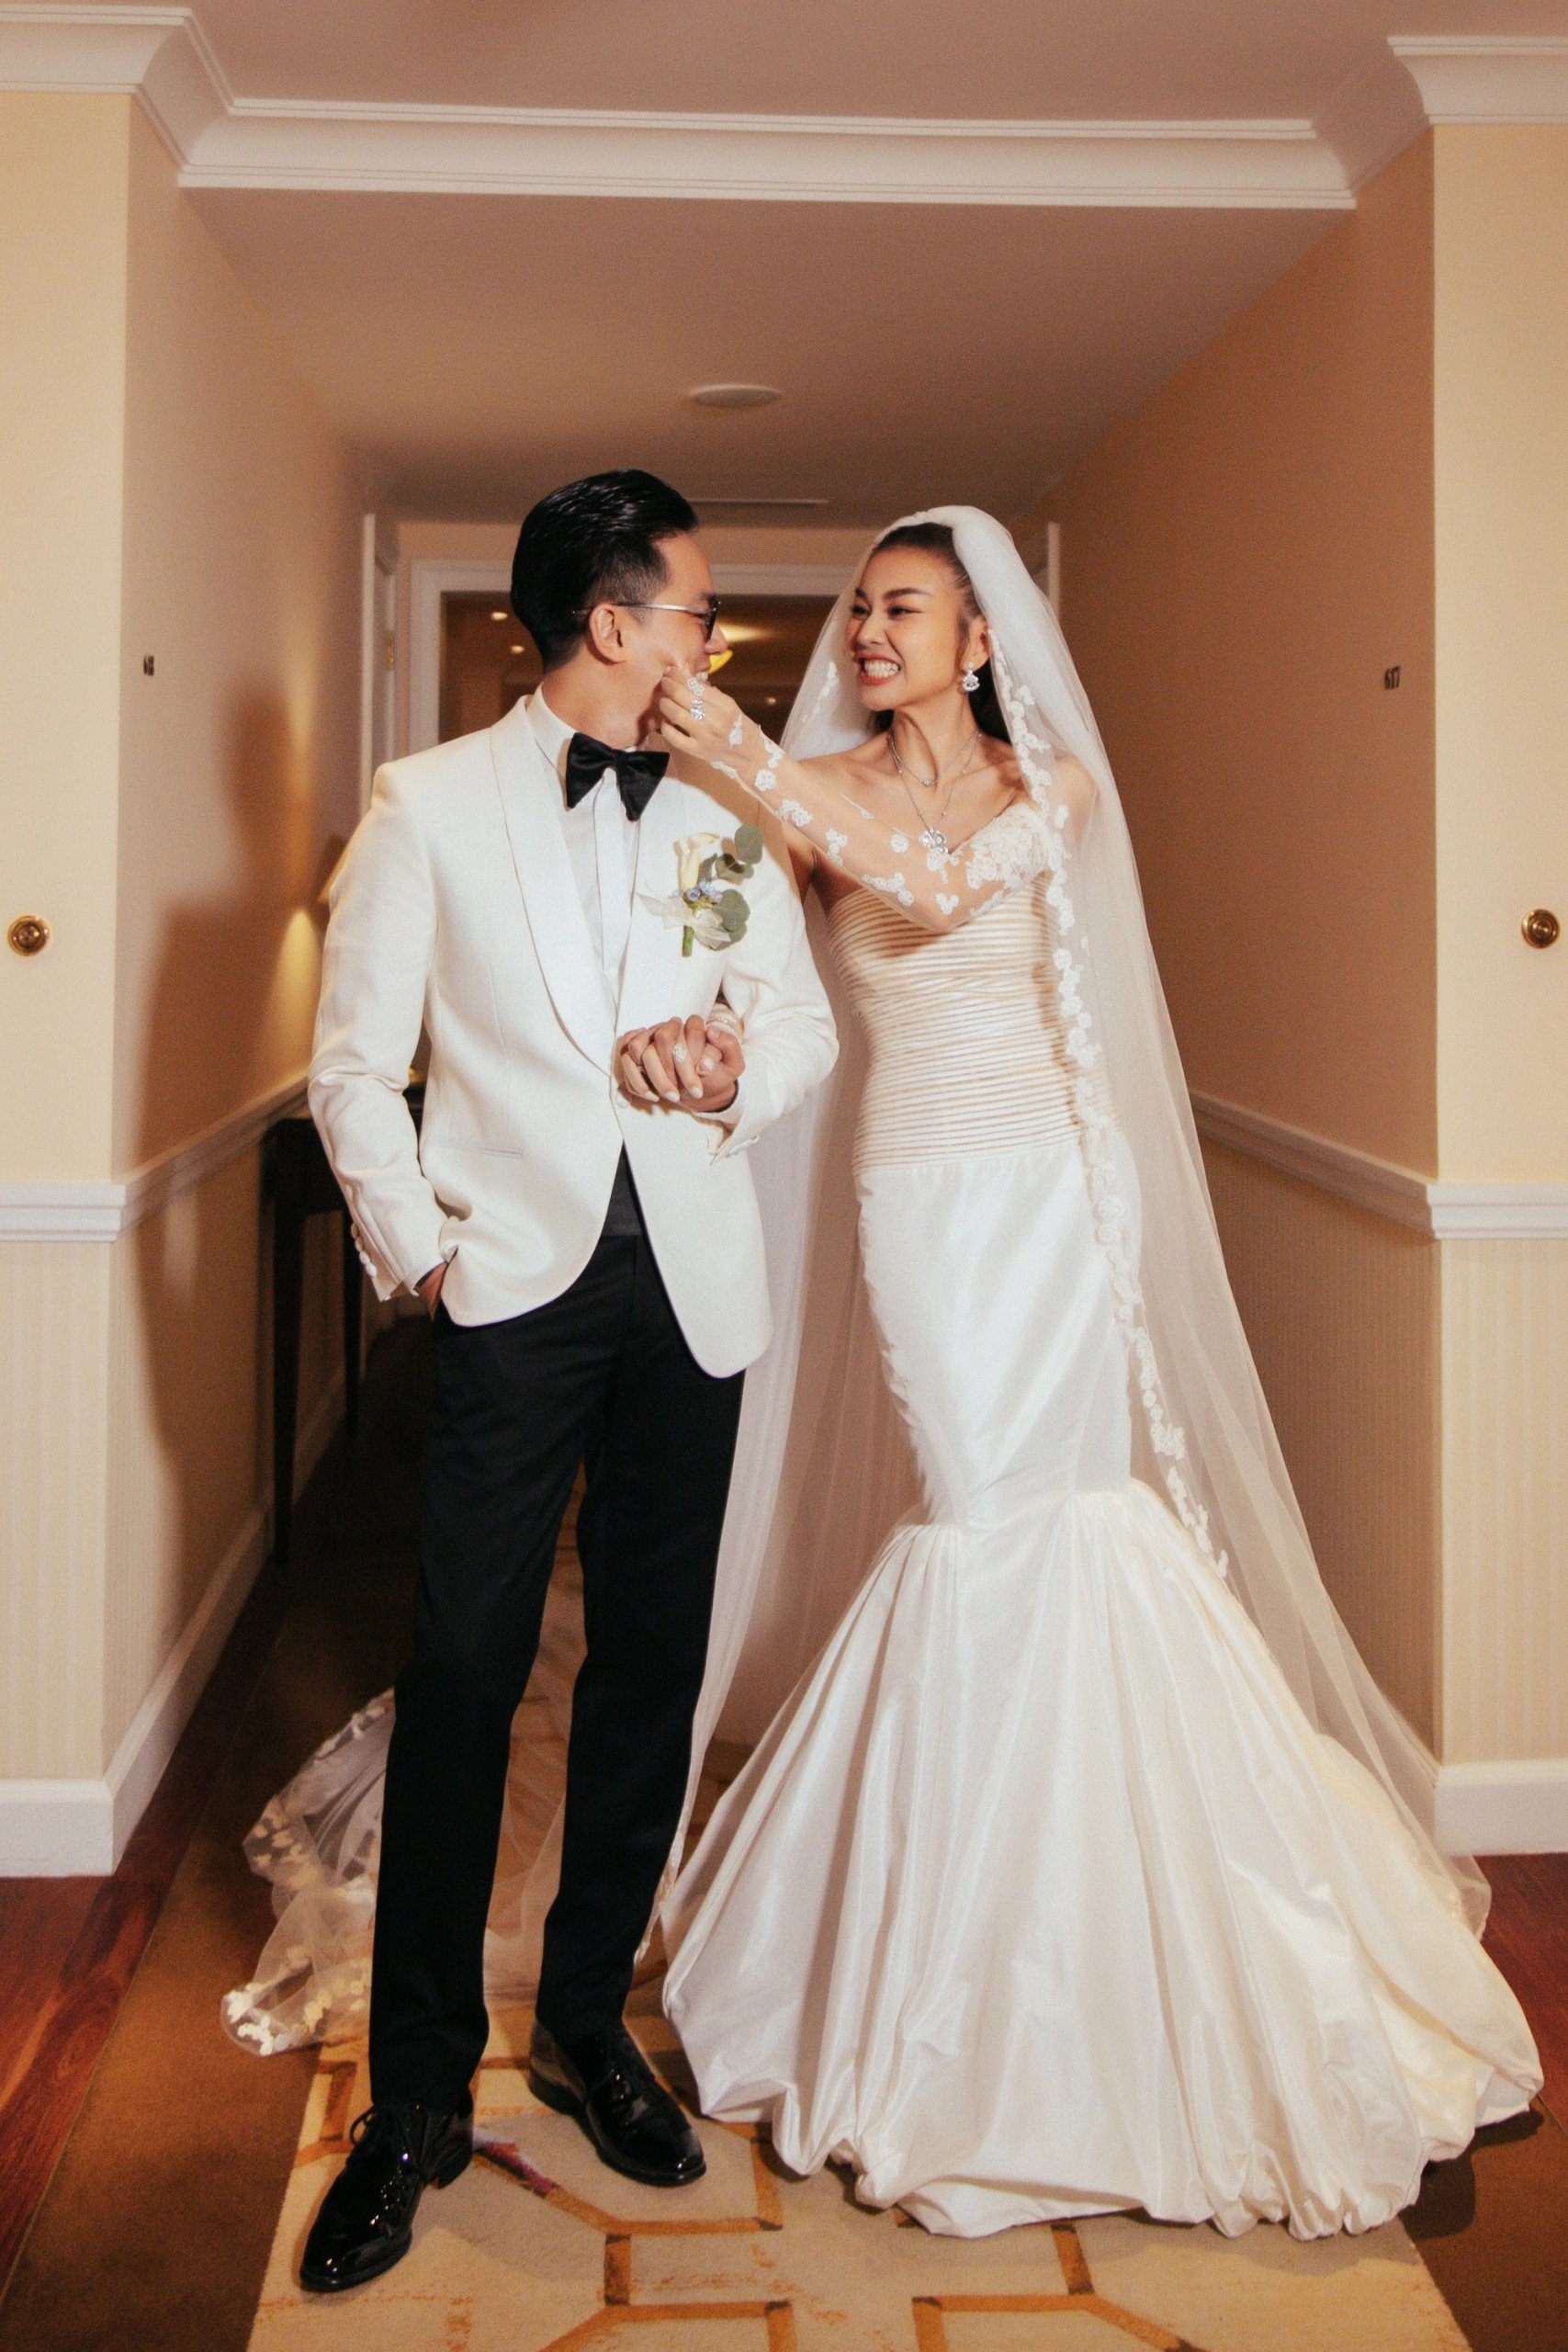 Thanh Hằng và chồng nhạc trưởng nhận tin vui sau đám cưới cổ tích, netizen đồng loạt chúc mừng - ảnh 4